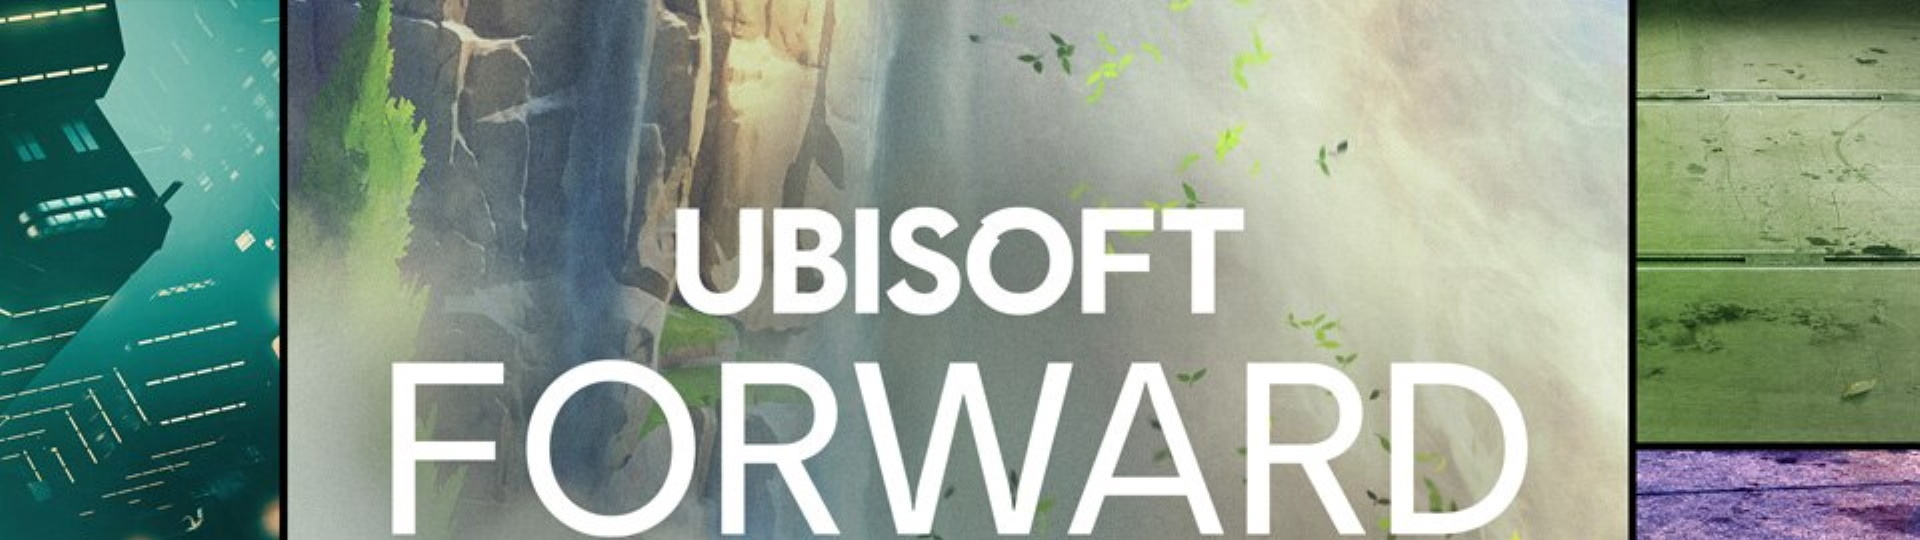 Dnes večer proběhne další Ubisoft Forward | Novinky